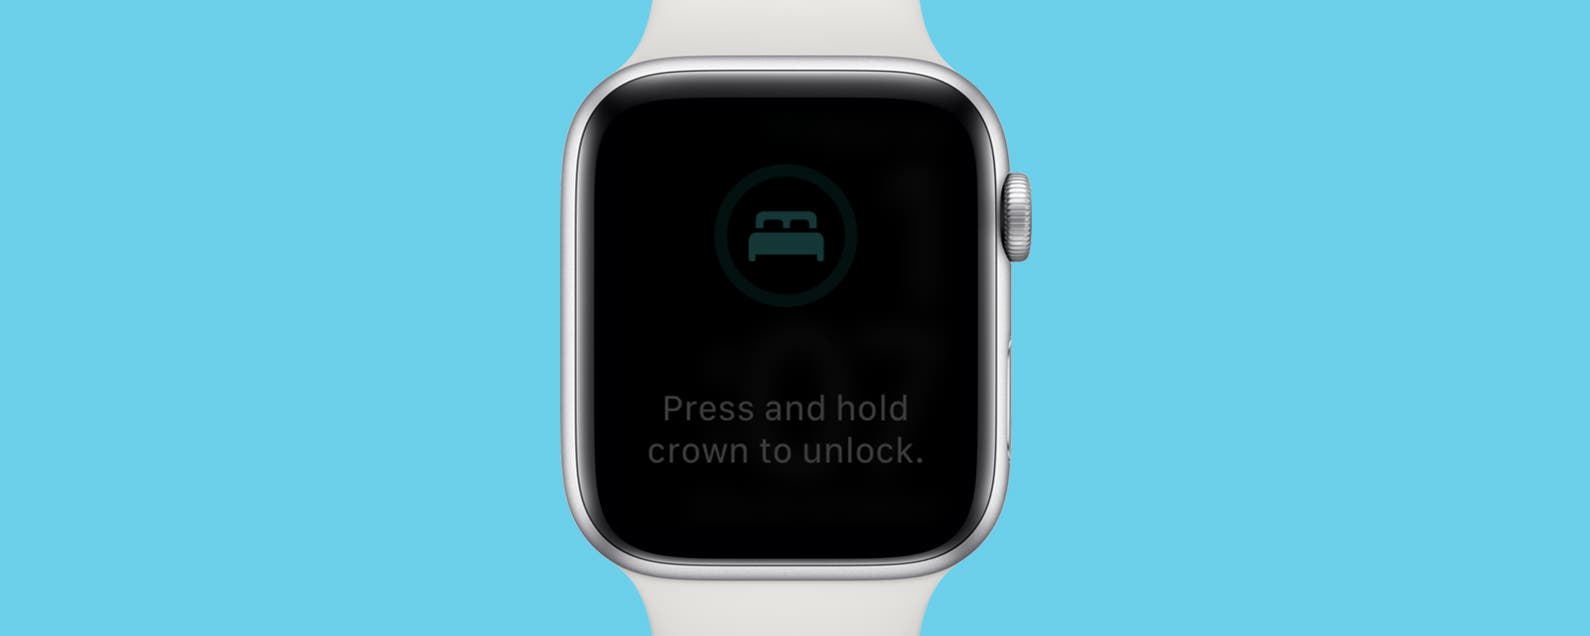 Как разблокировать часы apple. Эпл вотч спящий режим. Water Lock. Как разблокировать Apple watch 3 если забыл пароль?.